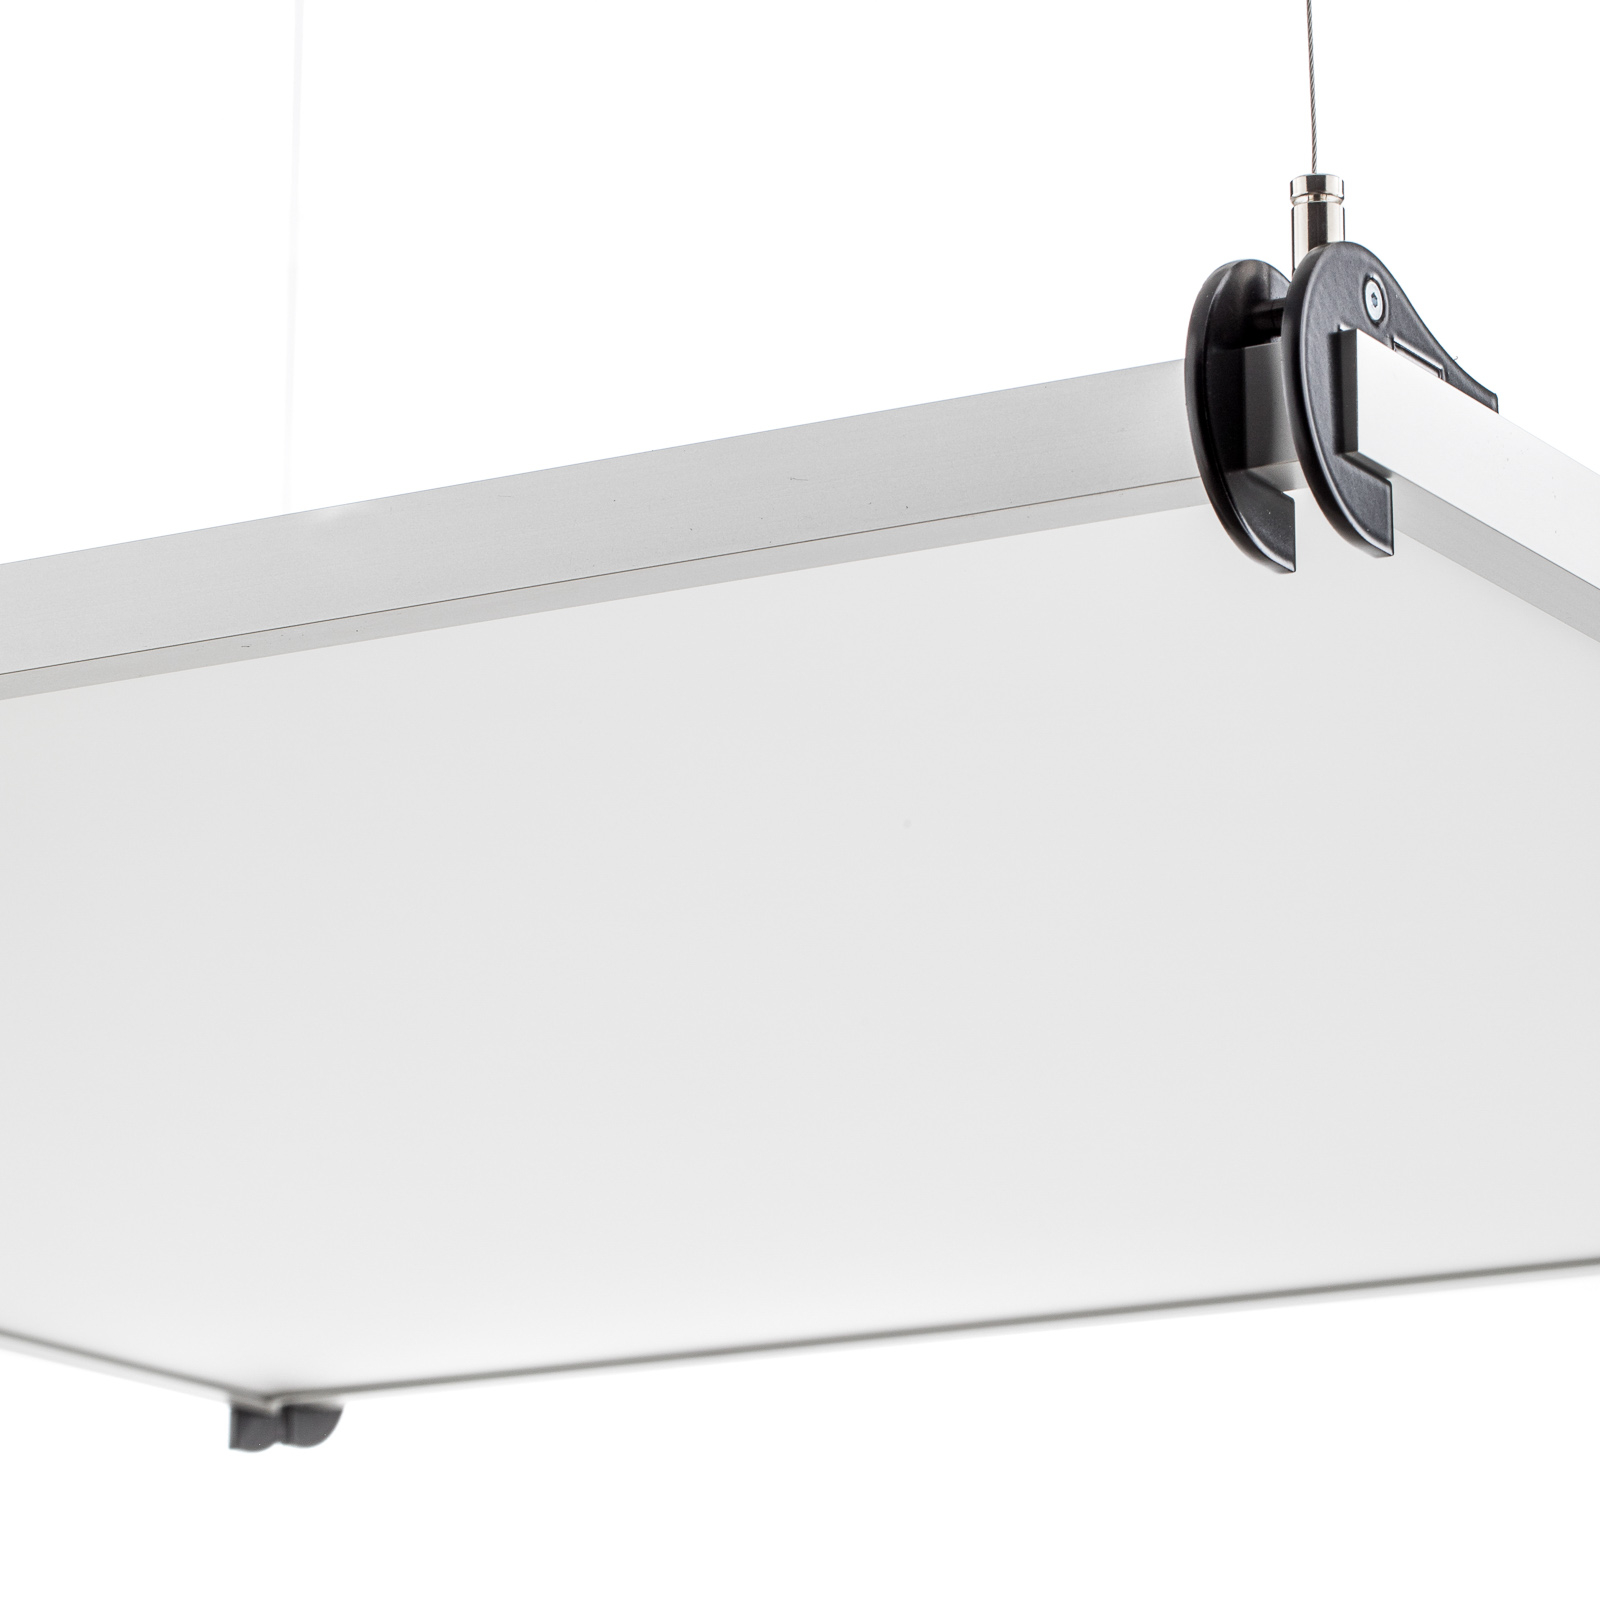 Designer LED hanging light Grafa